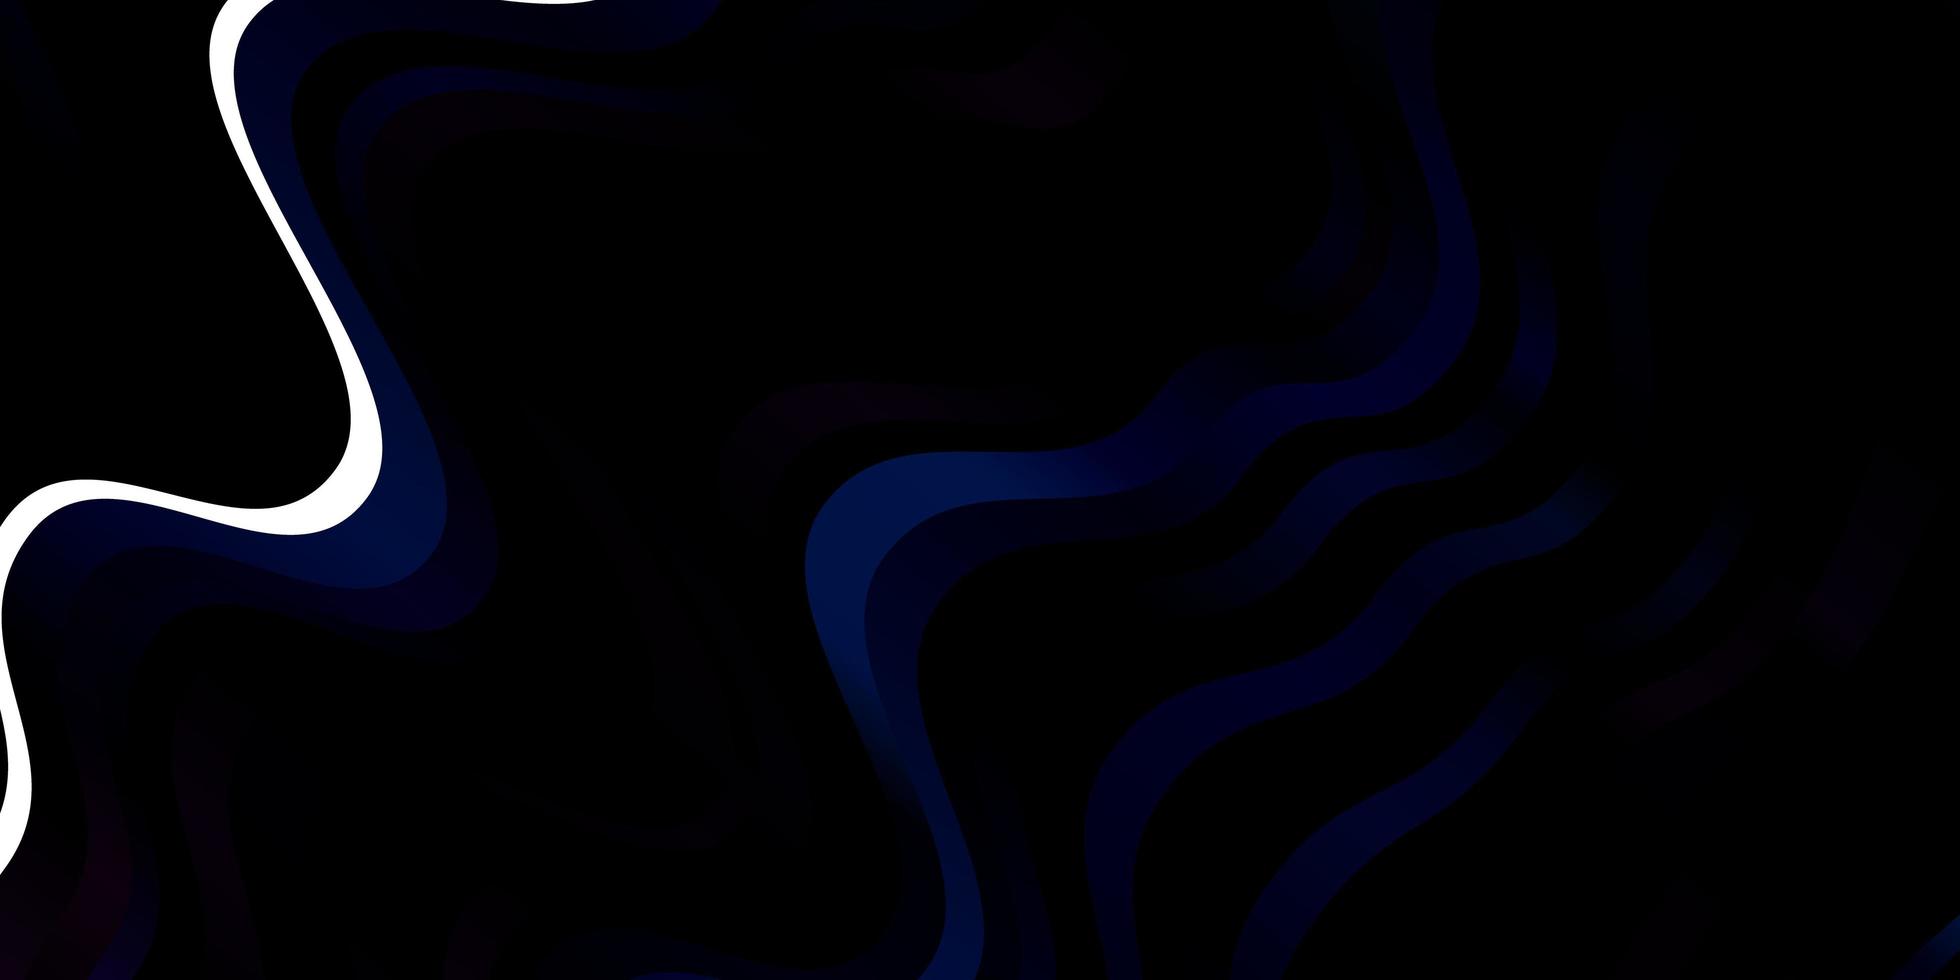 Diseño vectorial azul oscuro con ilustración abstracta de arco circular con patrón de arcos degradados para folletos folletos vector